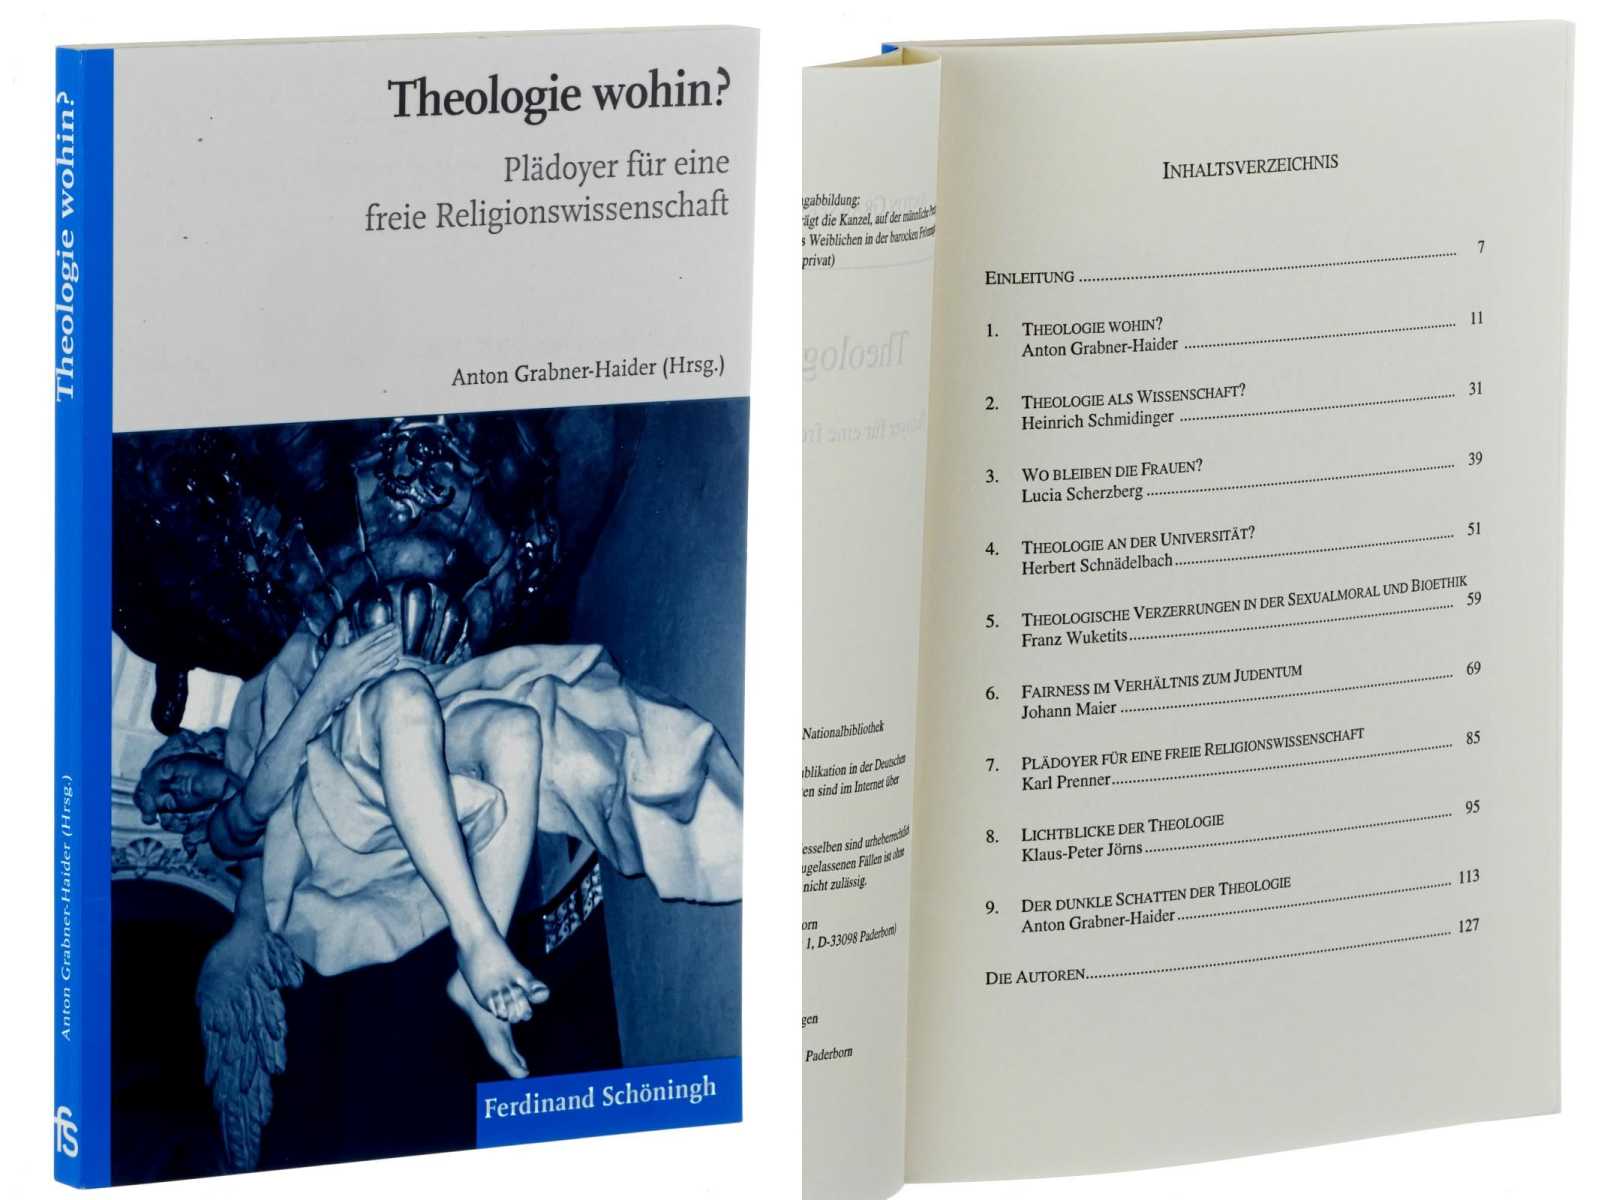 Grabner-Haider, Anton (Hg.):  Theologie wohin? Plädoyer für eine freie Religionswissenschaft. 